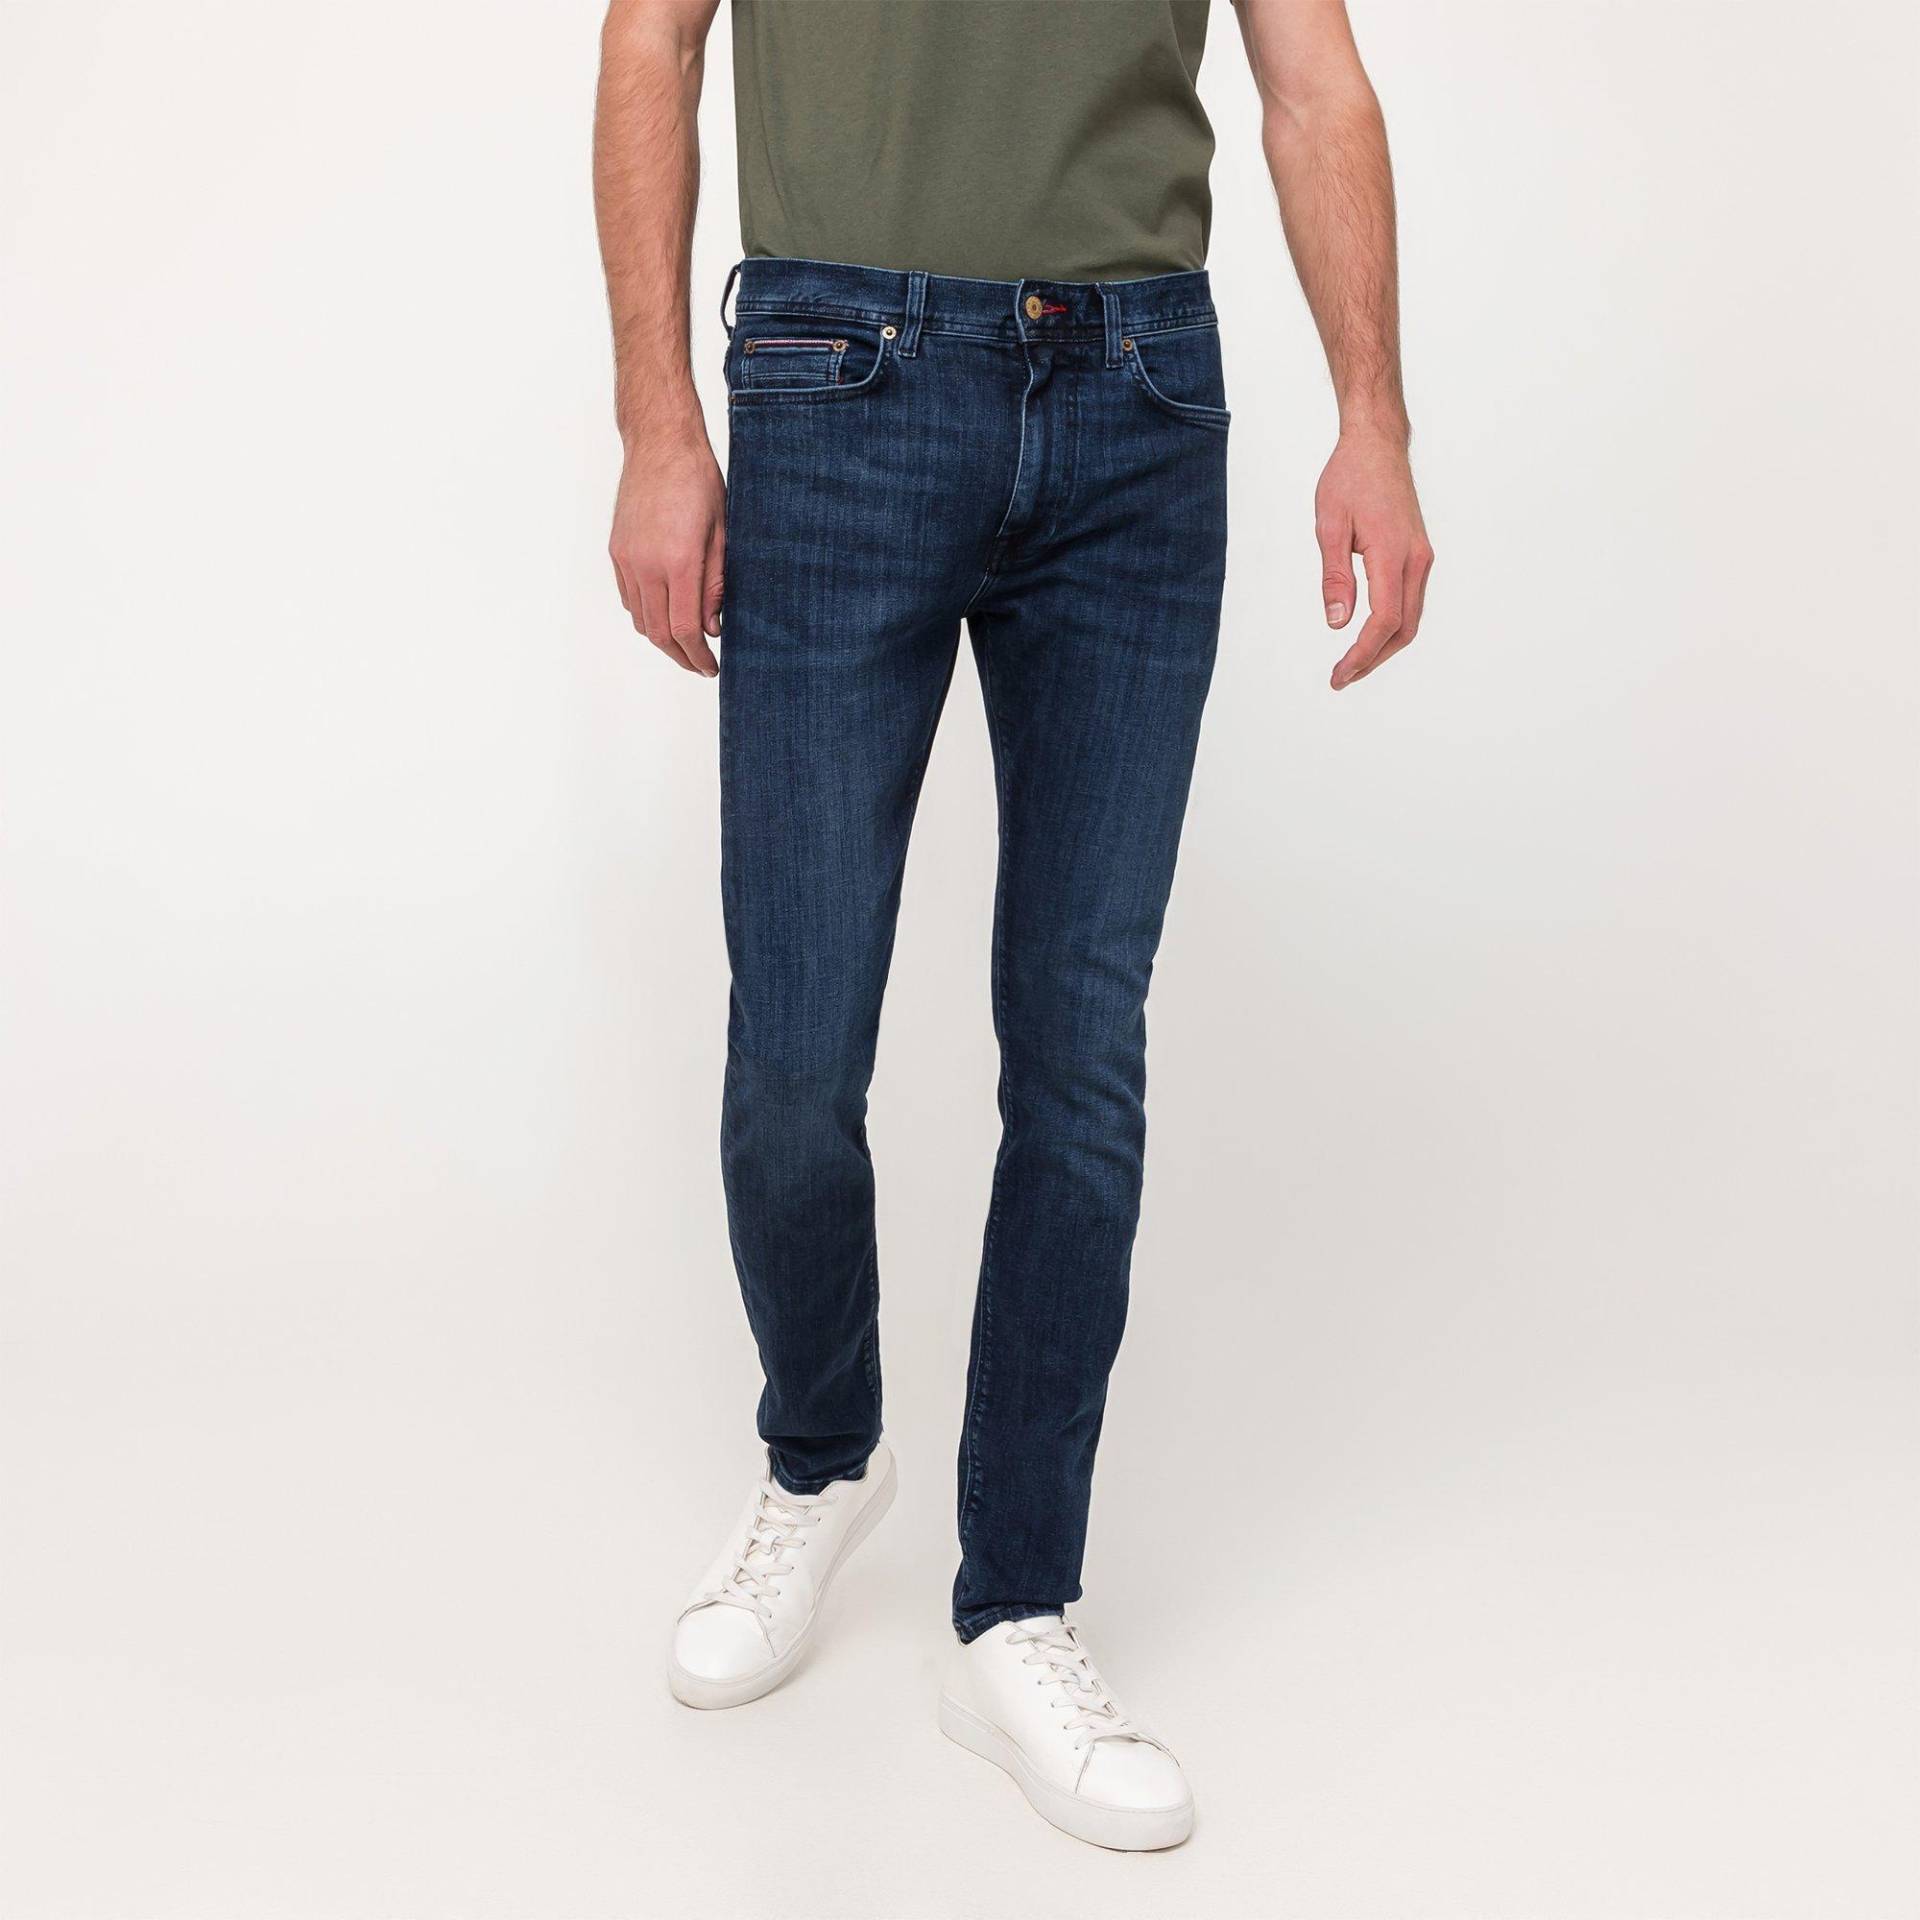 Jeans, Slim Fit Herren Indigo L30/W34 von TOMMY HILFIGER